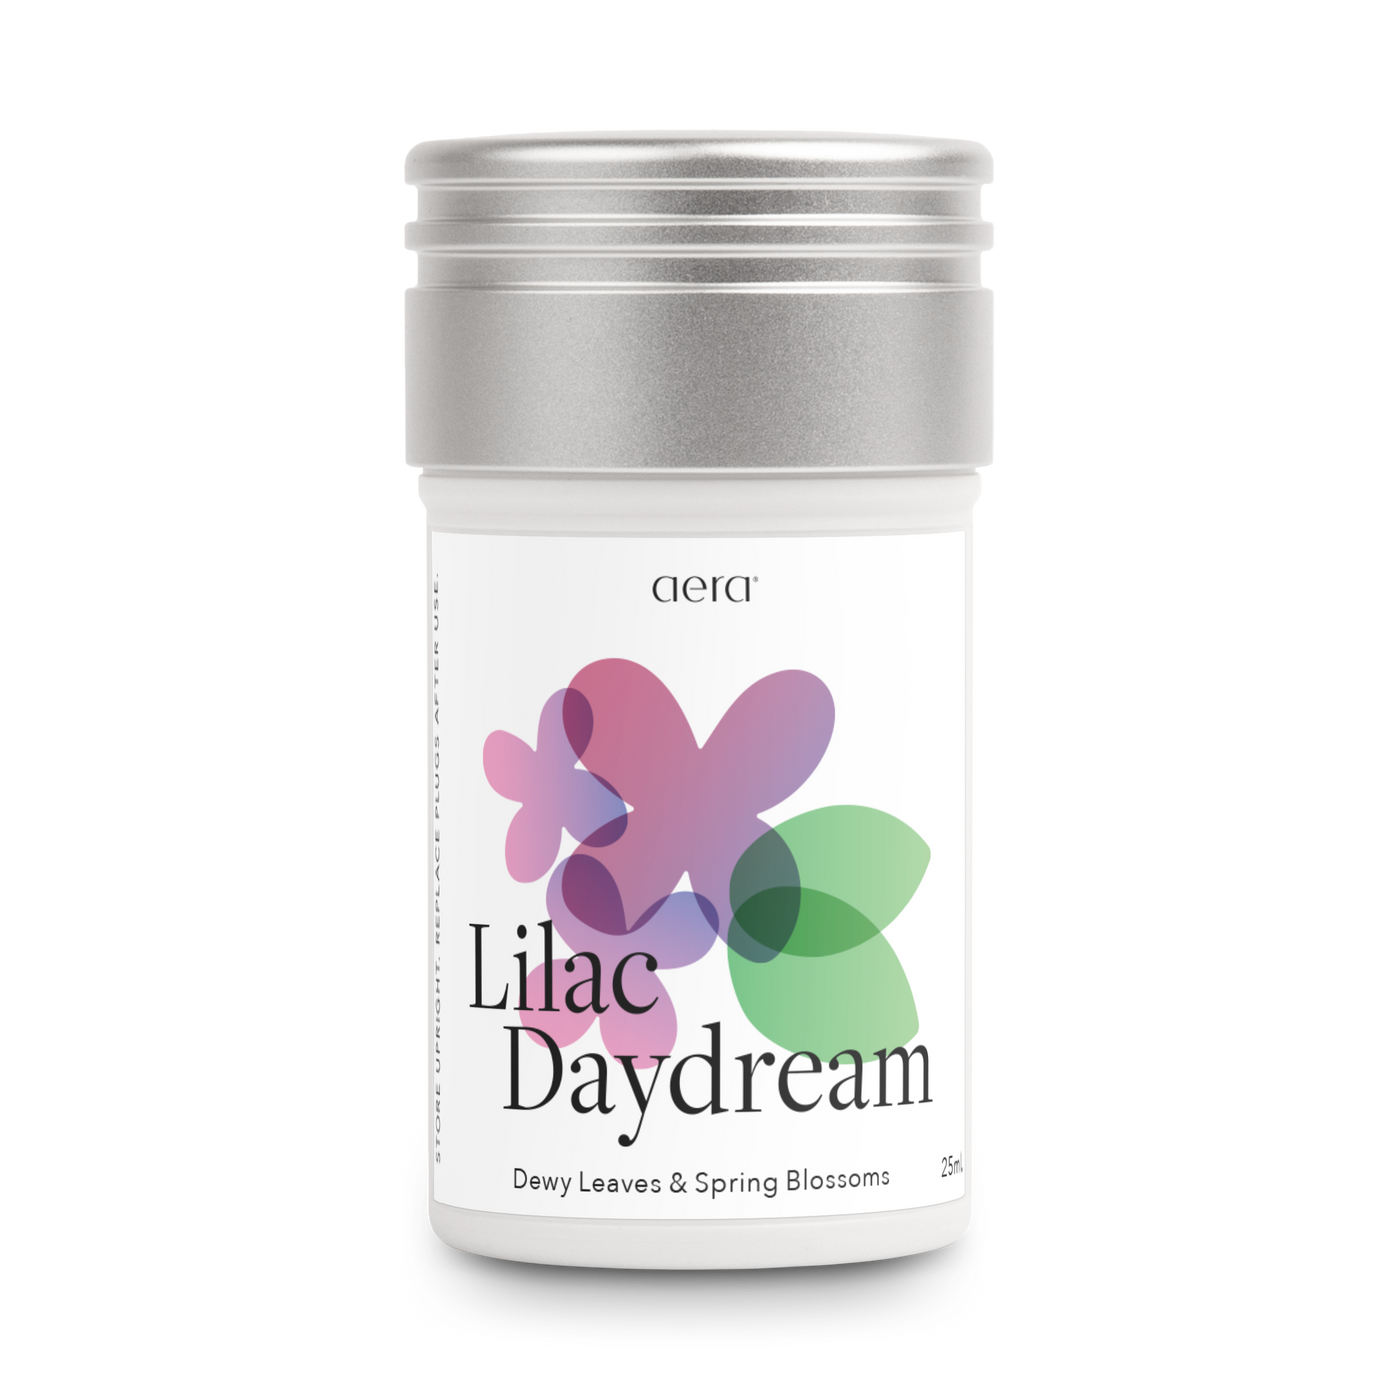 Lilac Daydream